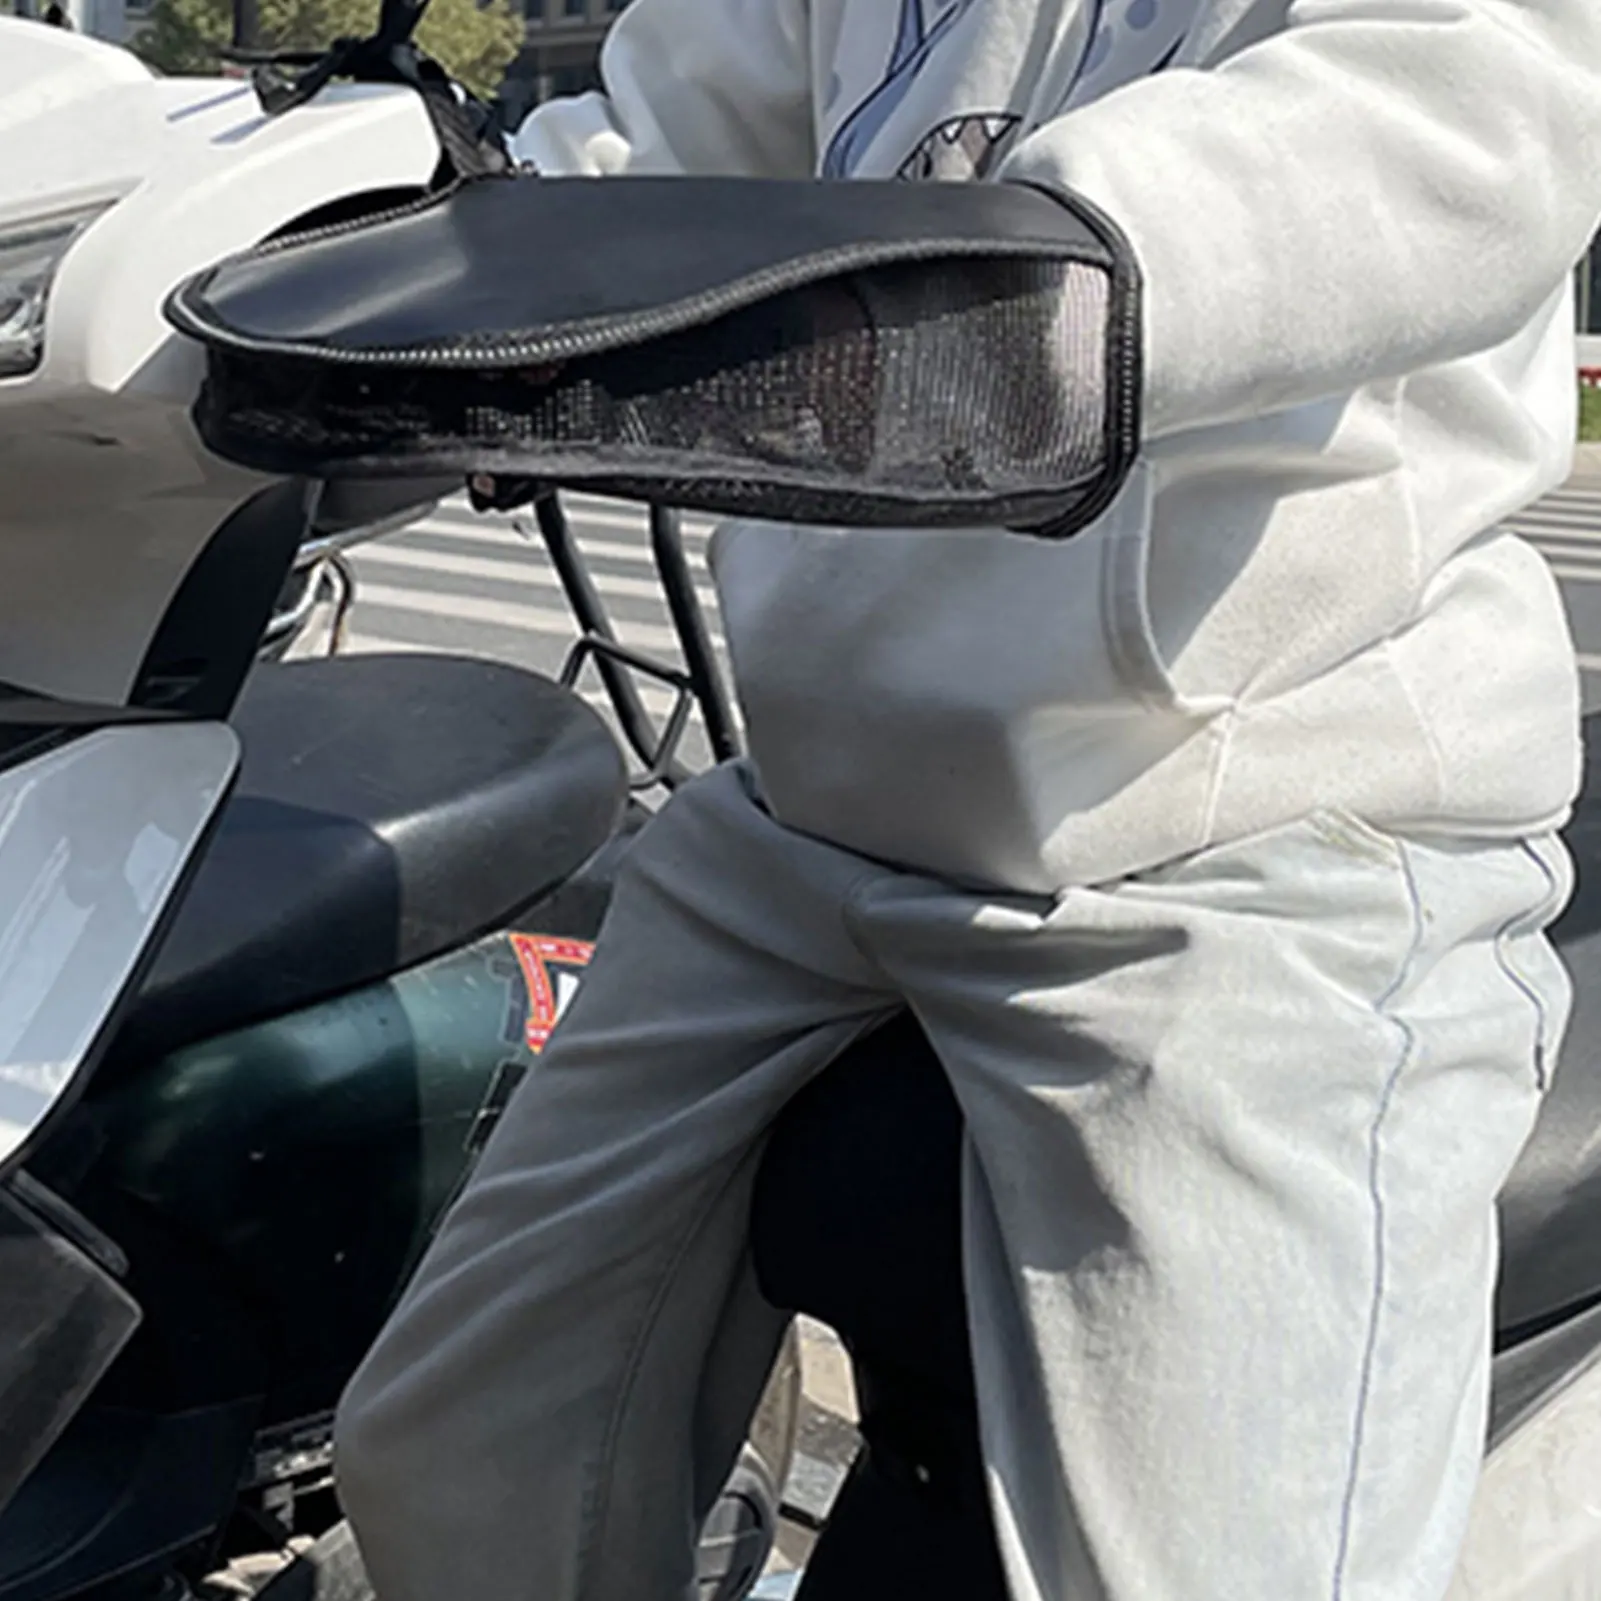 Moto Manubrio Manicotti Sole Estivo Guanti Di Protezione Lato Traspirante E Fondo Maglia Equitazione Guanto Con Striscia Riflettente